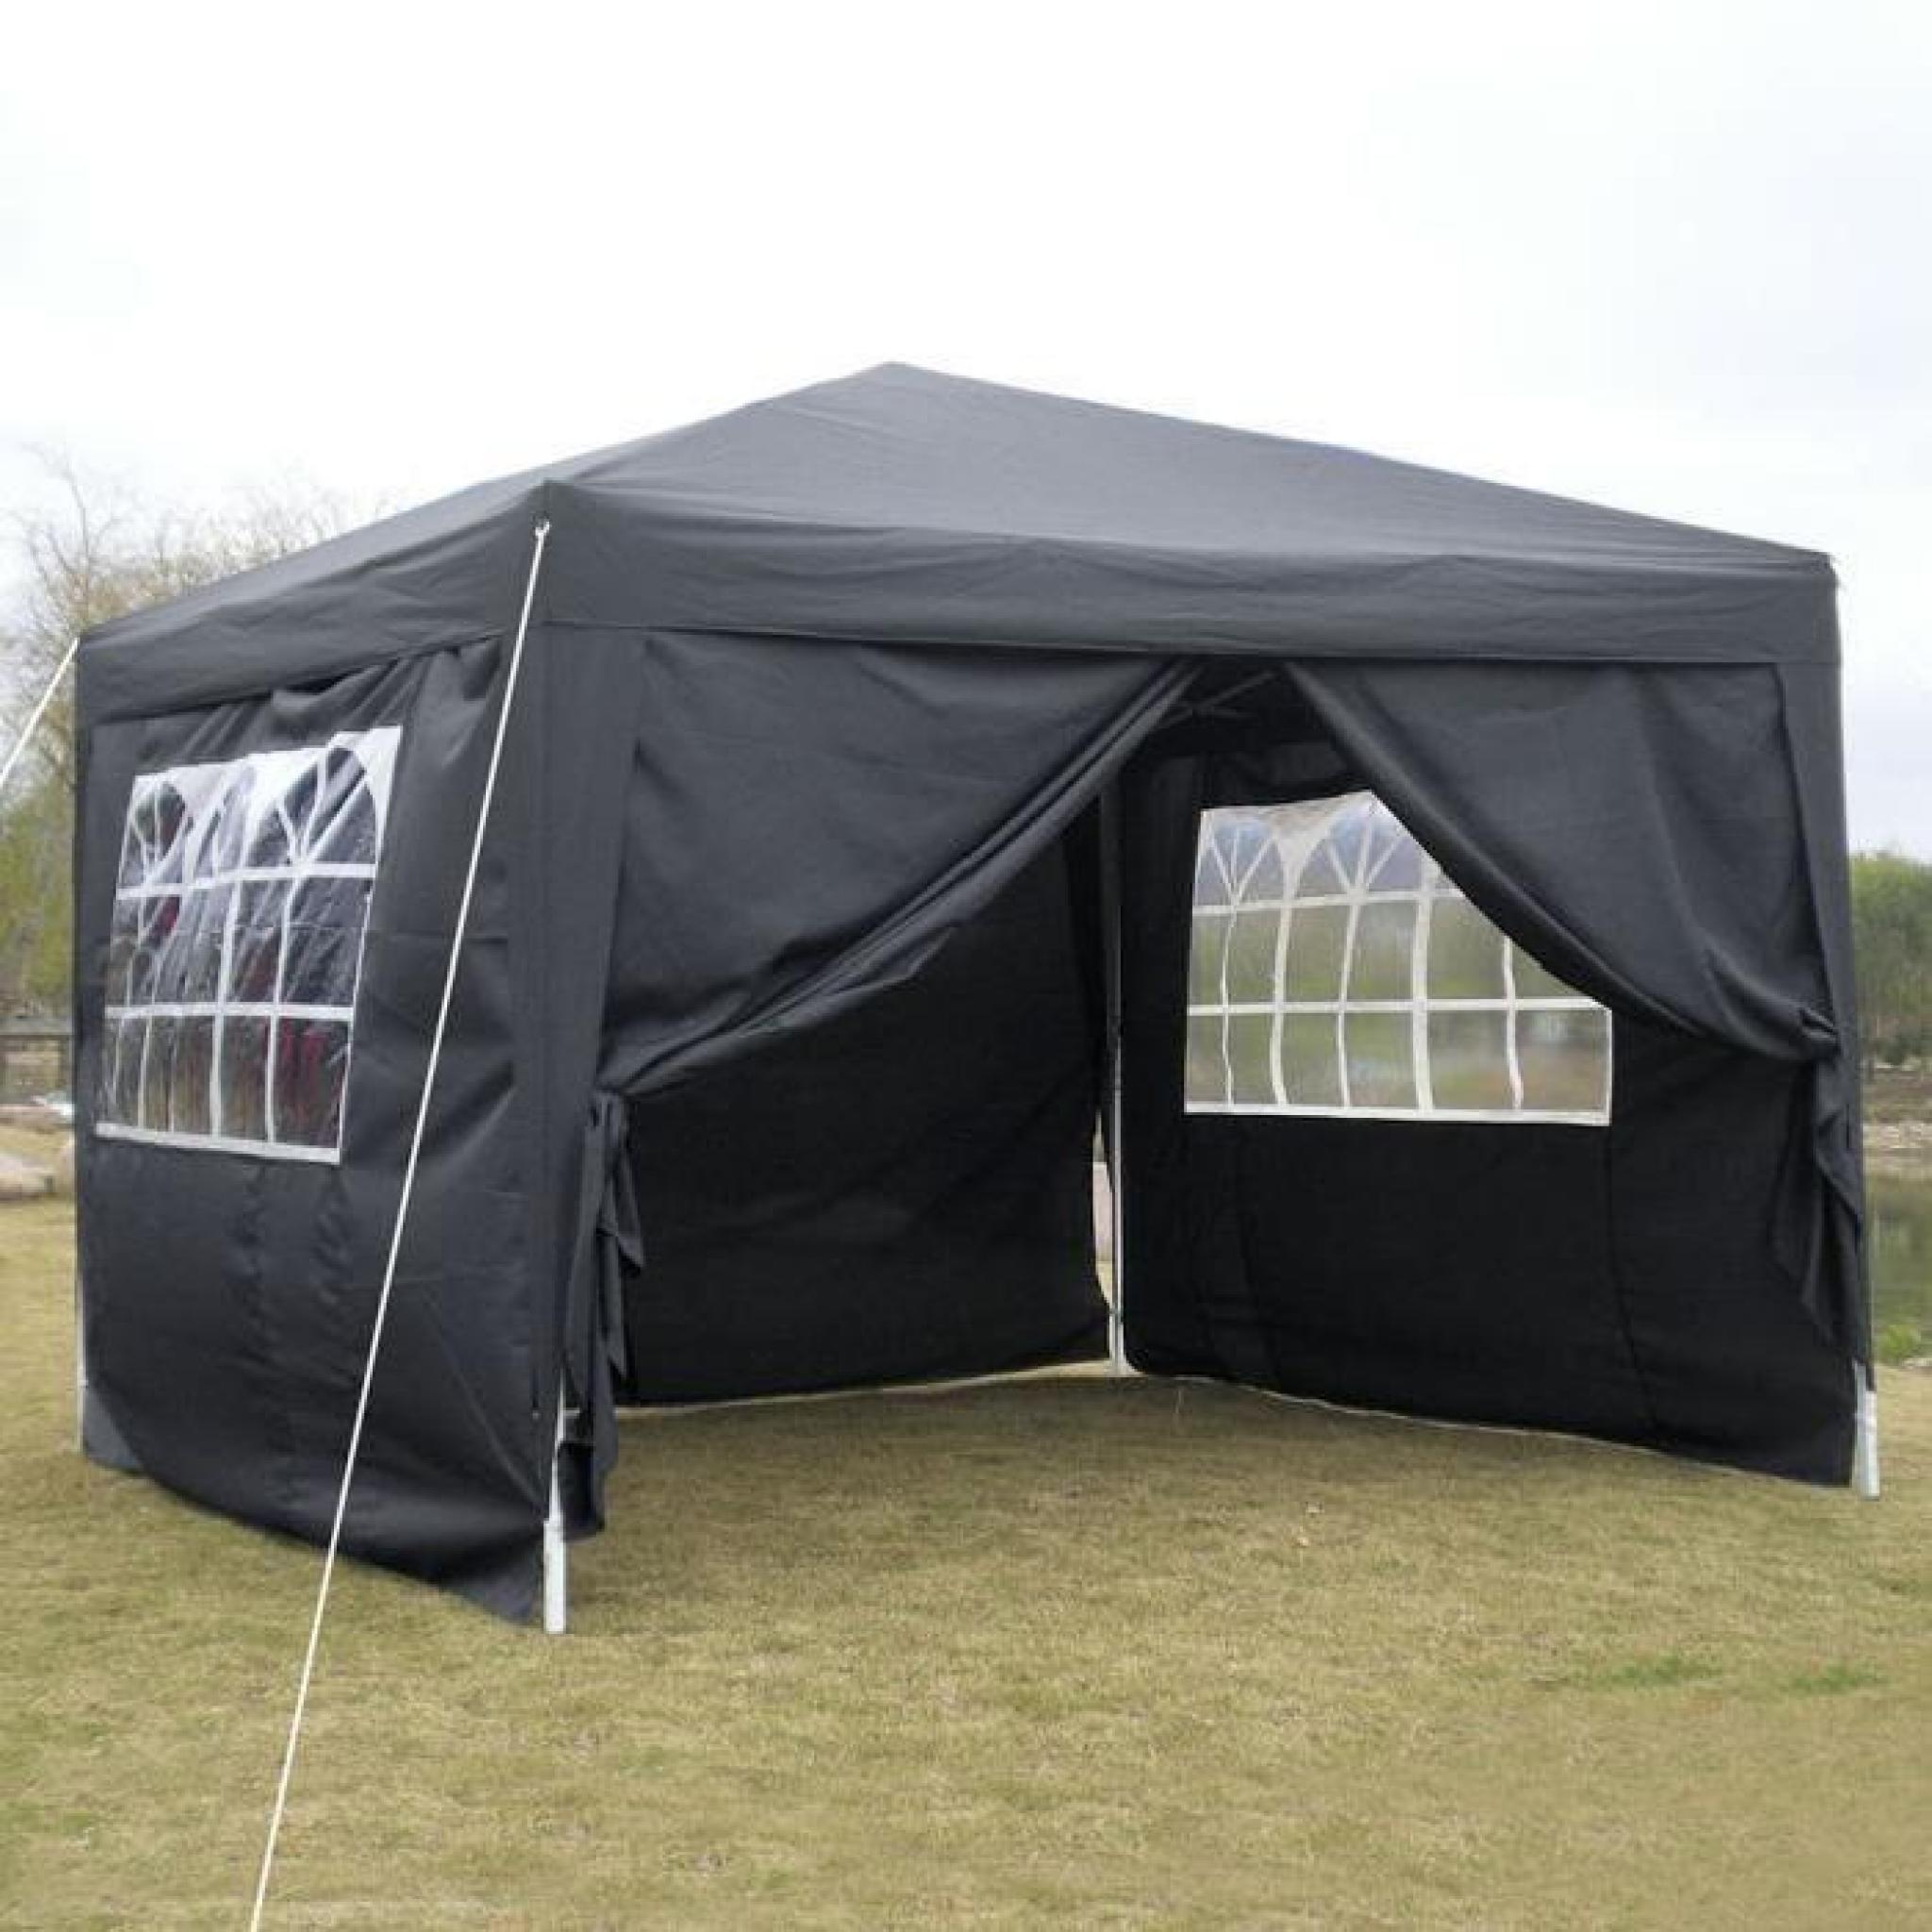 Homdox 3 x 3m tente tonnelle pliante Polyester auvent Camping tente en aluminium Tube-Support avec 4 panneaux latéraux